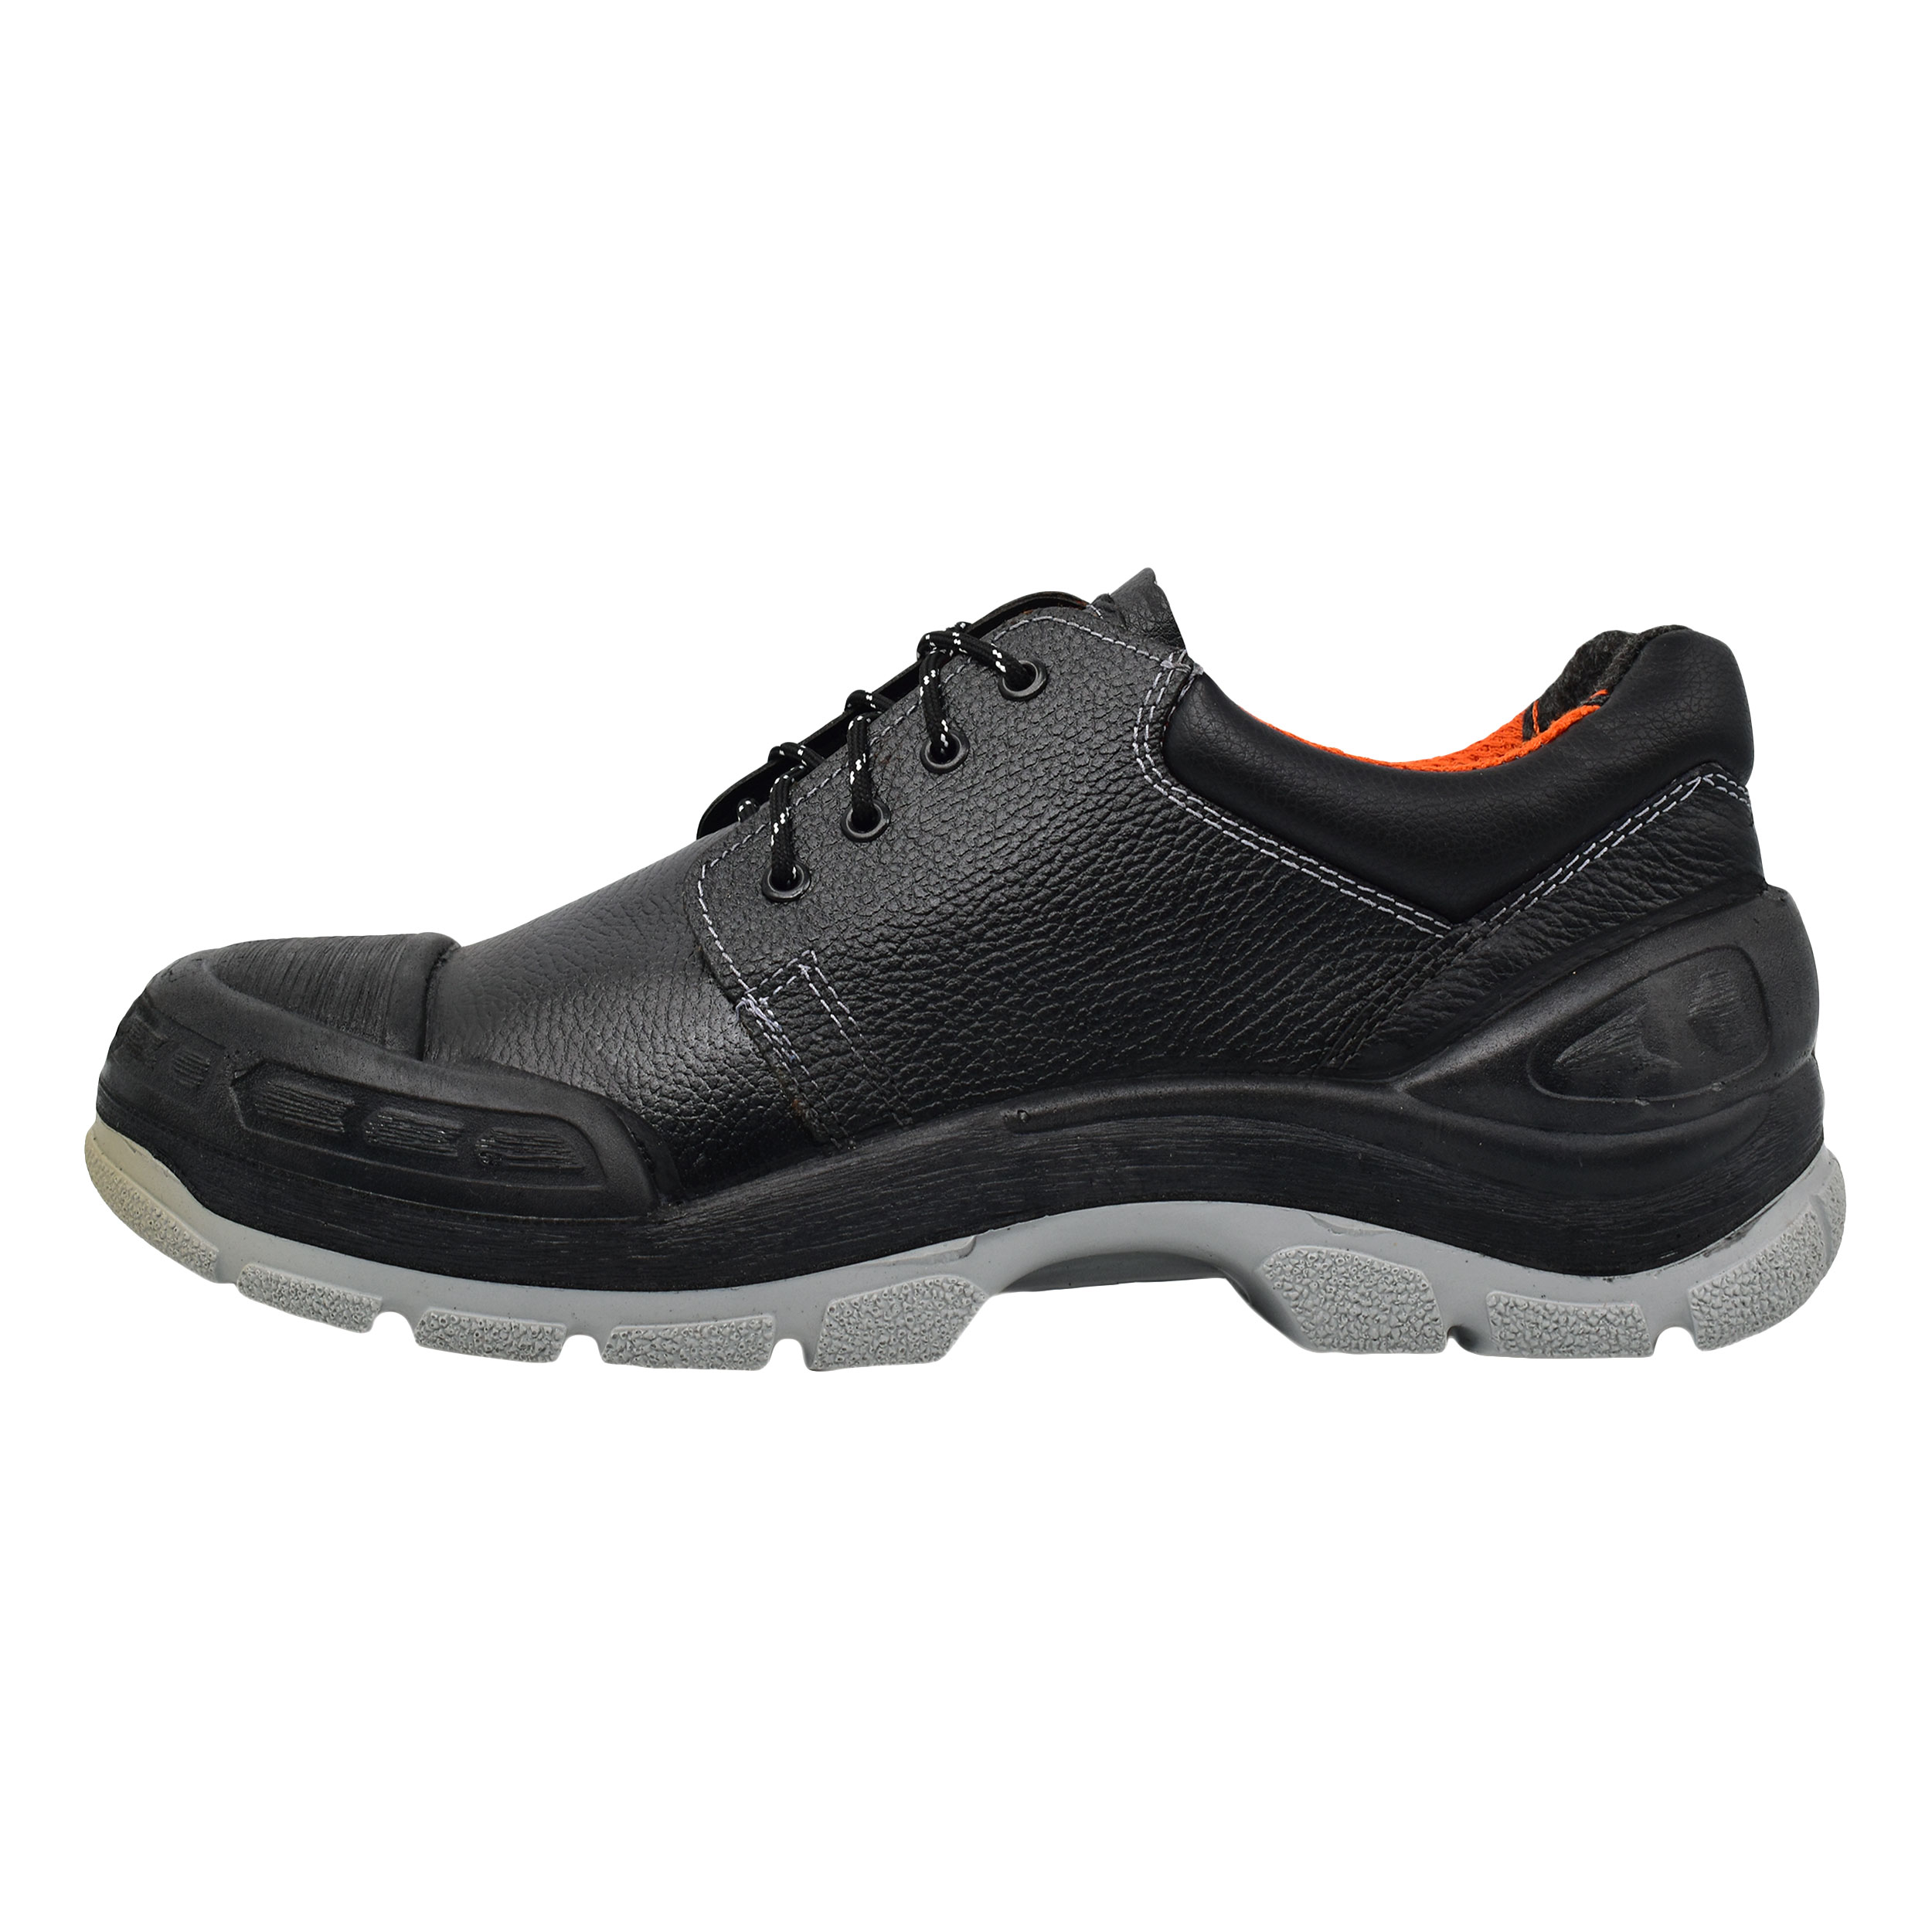 نکته خرید - قیمت روز کفش ایمنی کلار مدل KLR کد 9904 خرید